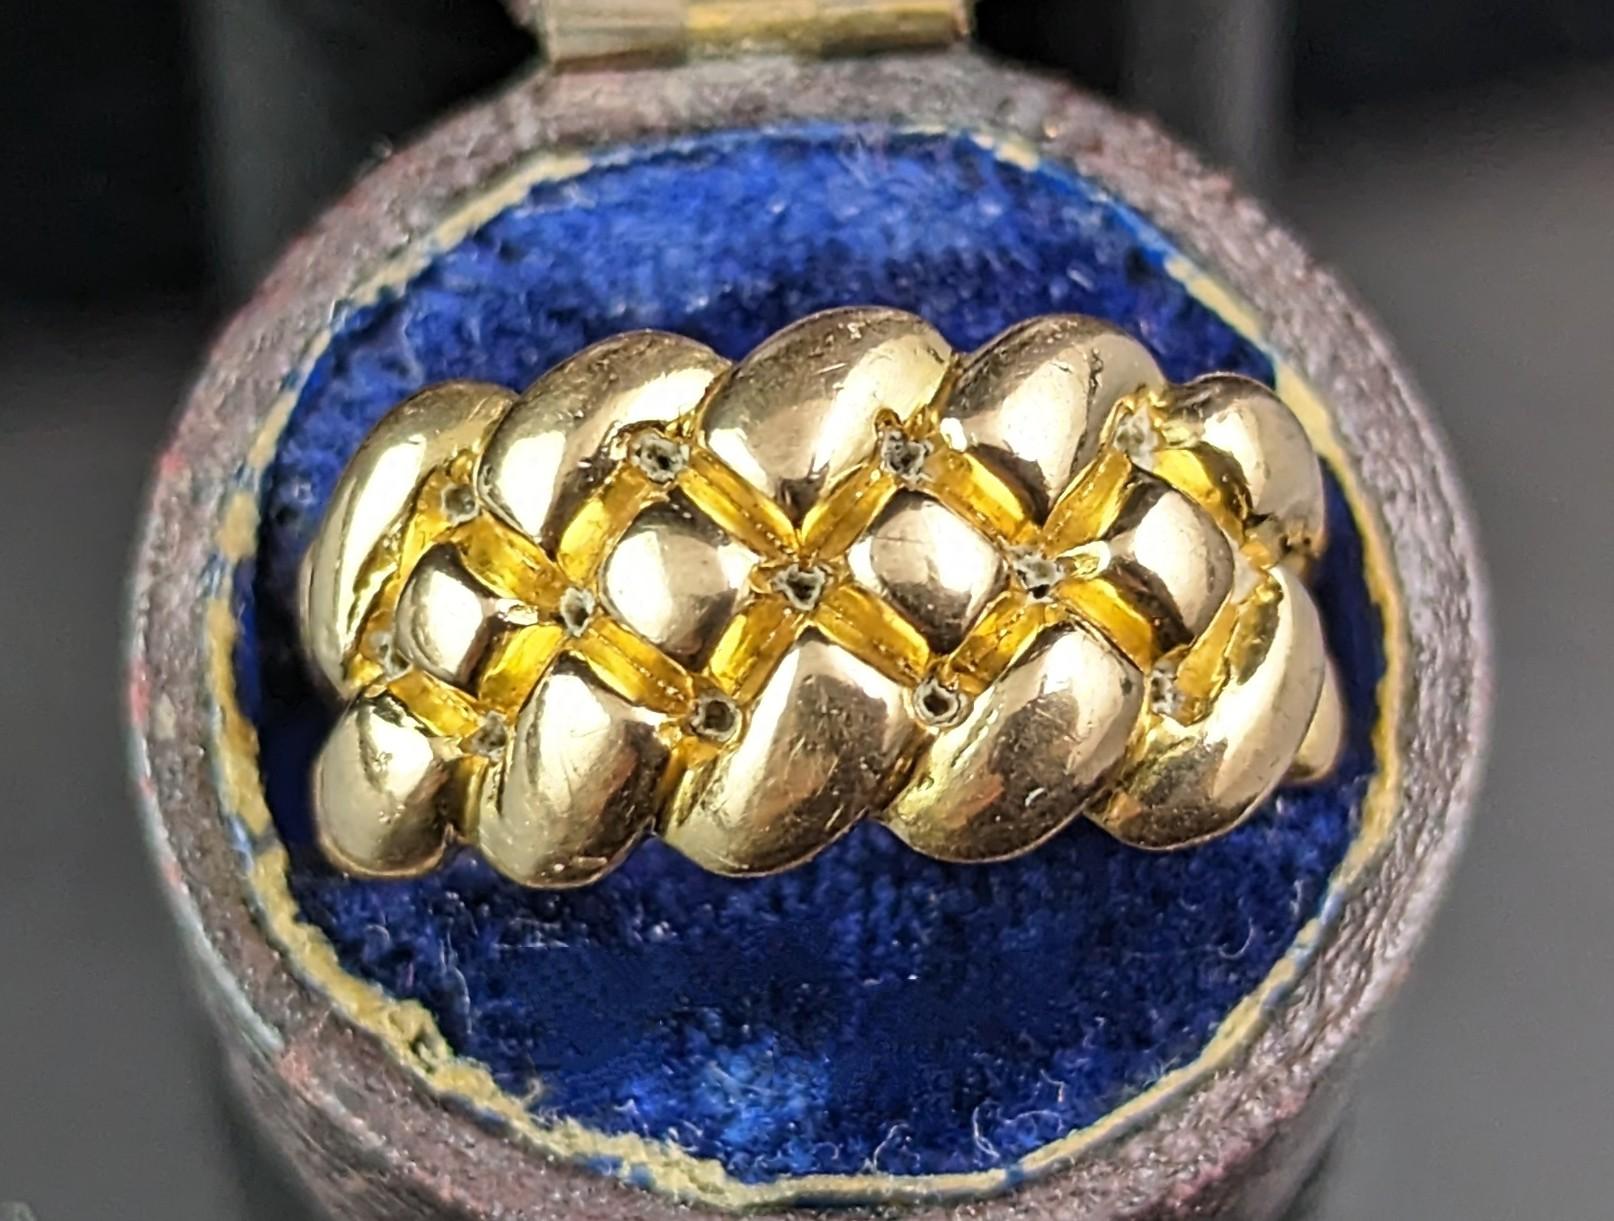 Dieser antike Keeper-Ring aus 18 Karat Gold ist ein absoluter Traum!

Dies ist einer der besten Keeper-Ringe, die mir je begegnet sind, mit seinem interessanten und einzigartigen Kissenknoten-Design und dem herrlich reichen 18-karätigen